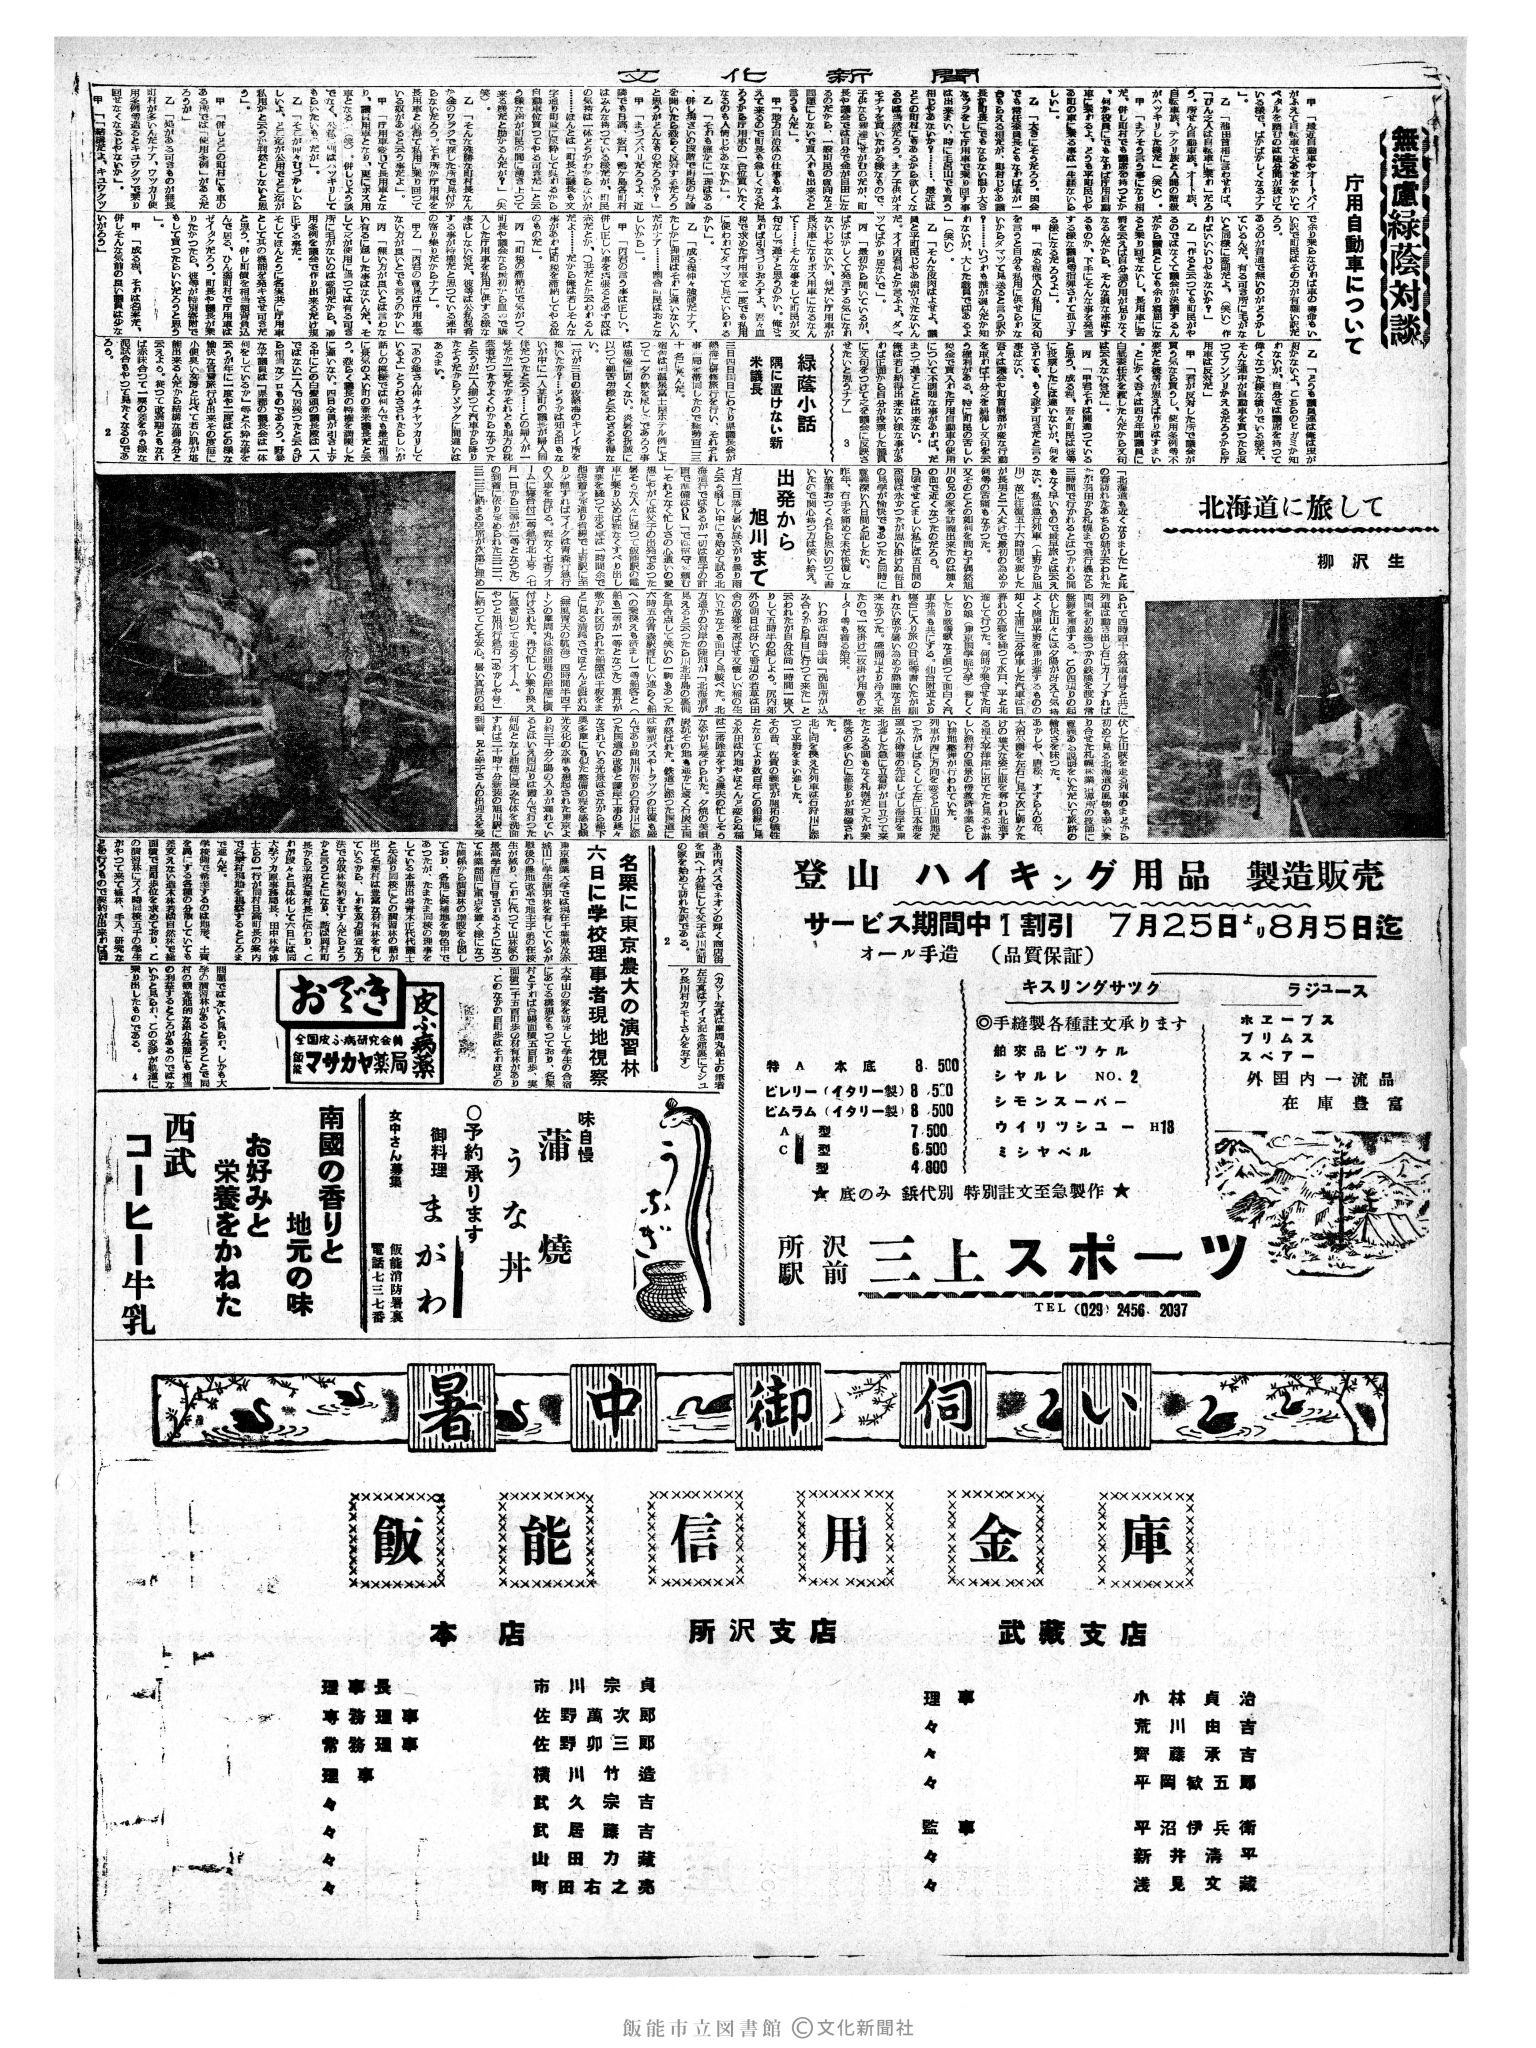 昭和35年8月7日2面 (第3603号) 3ページと同じ内容が印刷されています